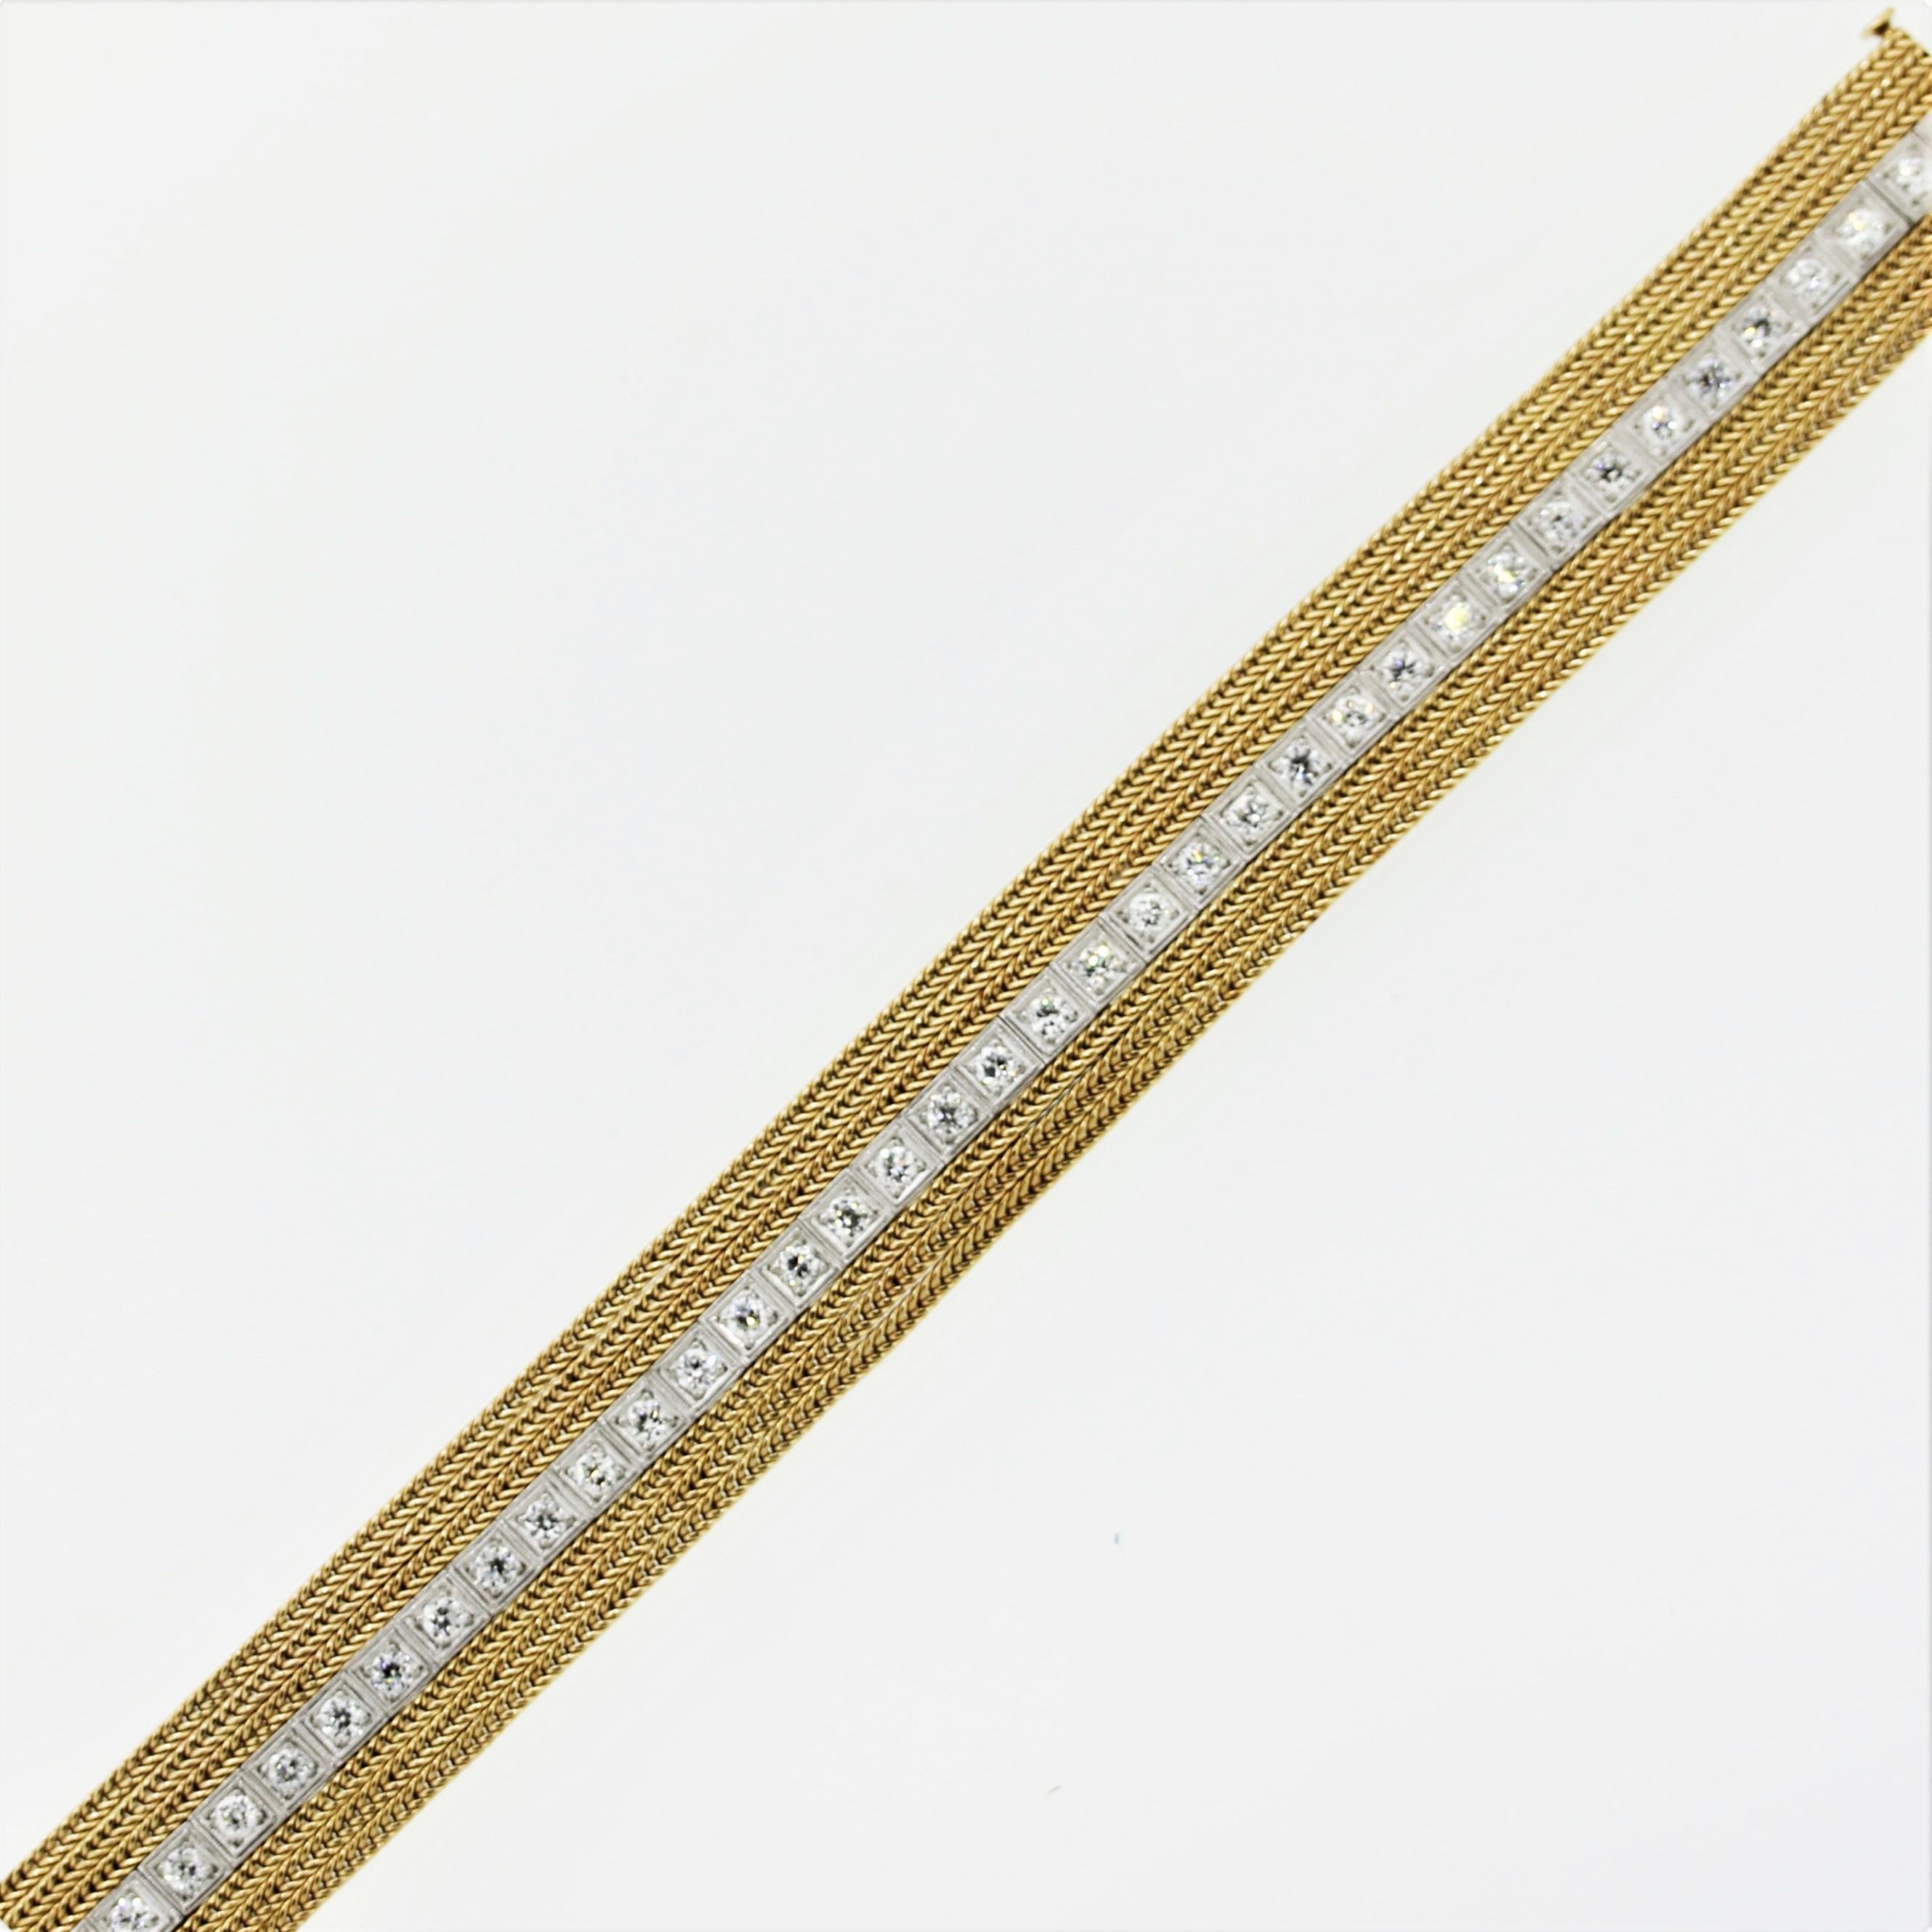 Ein originales antikes Armband aus Platin mit Diamanten, das Jahre später mit geflochtenen Goldanhängern verändert wurde. Das Armband besteht aus 2,75 Karat Diamanten im europäischen Schliff, die in Platin (antiker Teil) gefasst sind, und Reihen aus